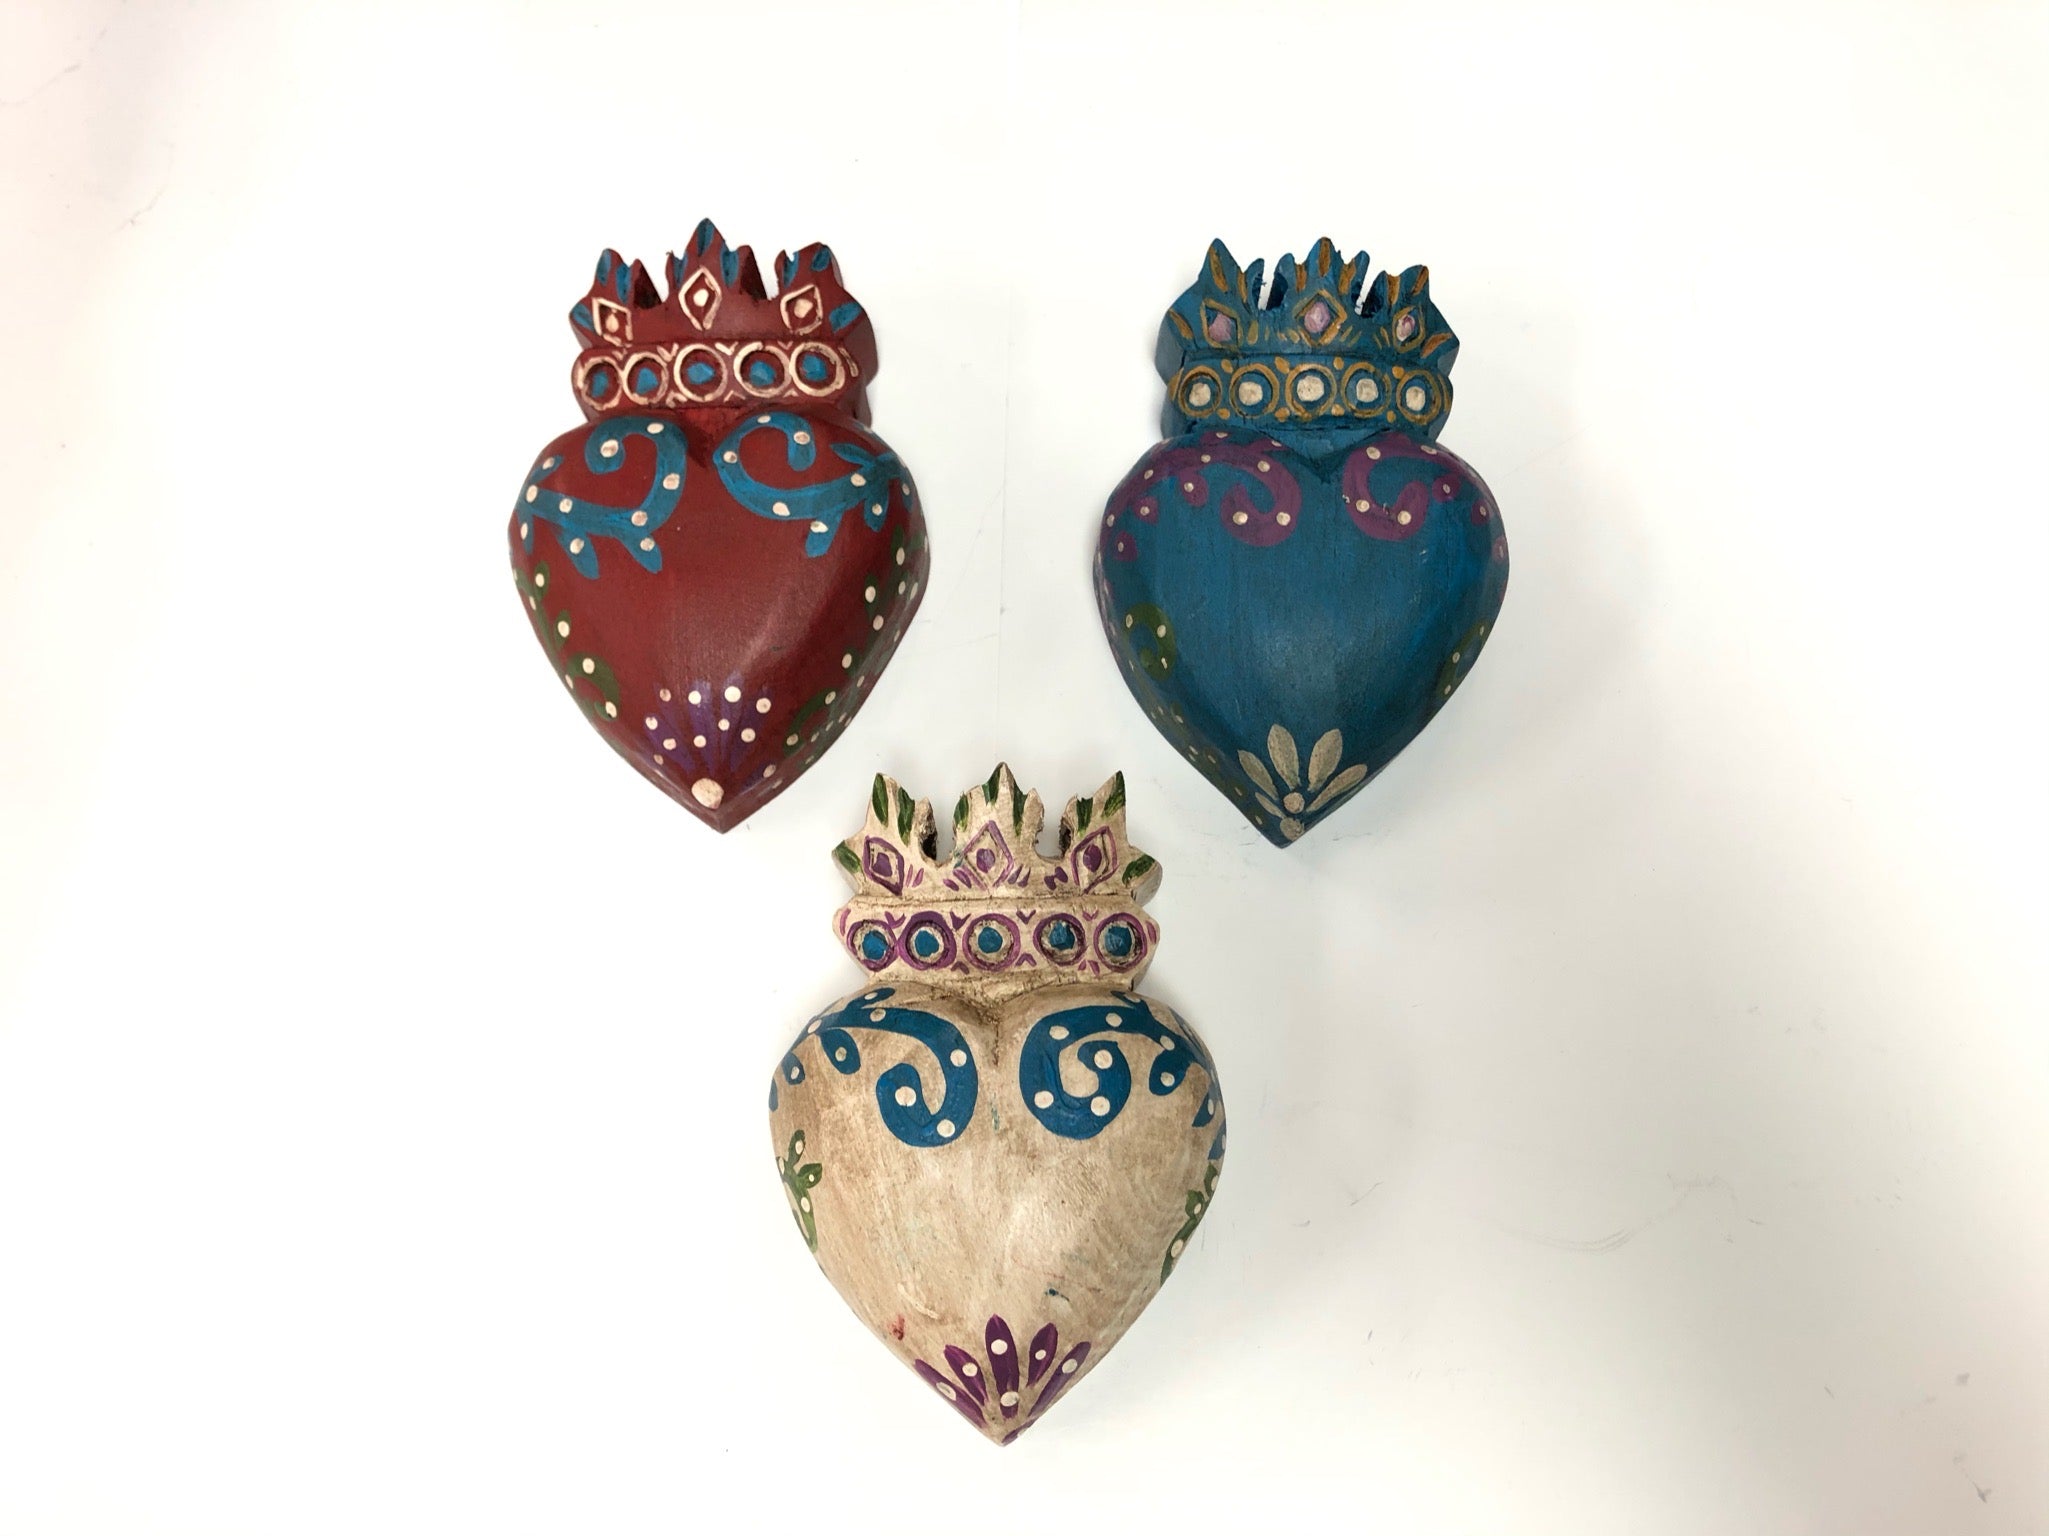 Painted Wooden Hearts – Casita del Pueblo